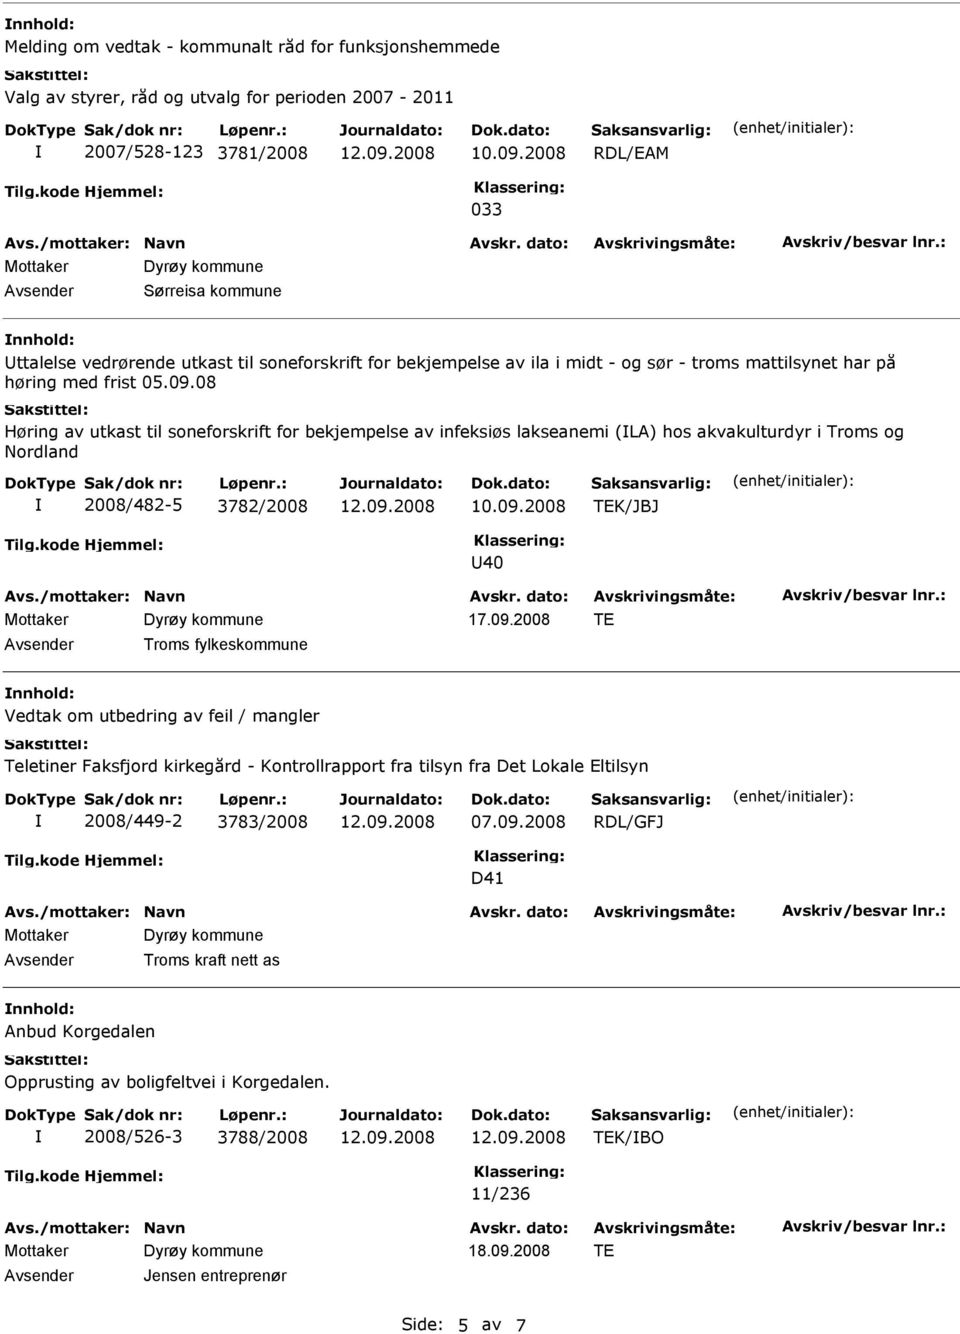 08 Høring av utkast til soneforskrift for bekjempelse av infeksiøs lakseanemi (LA) hos akvakulturdyr i Troms og Nordland 2008/482-5 3782/2008 TEK/JBJ 40 17.09.